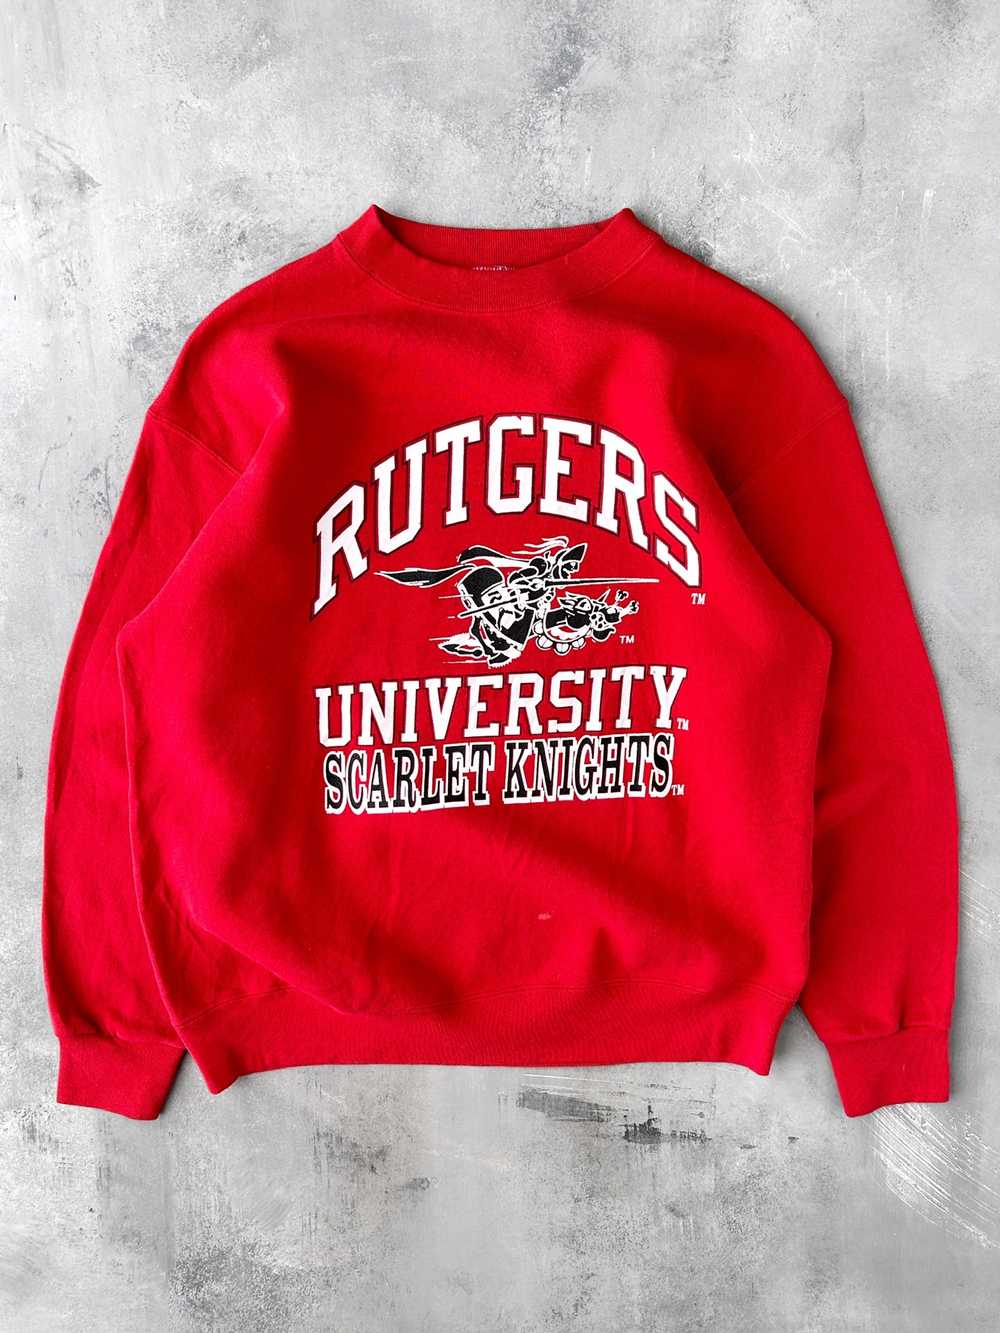 Rutgers University Sweatshirt 90's - Large - image 1